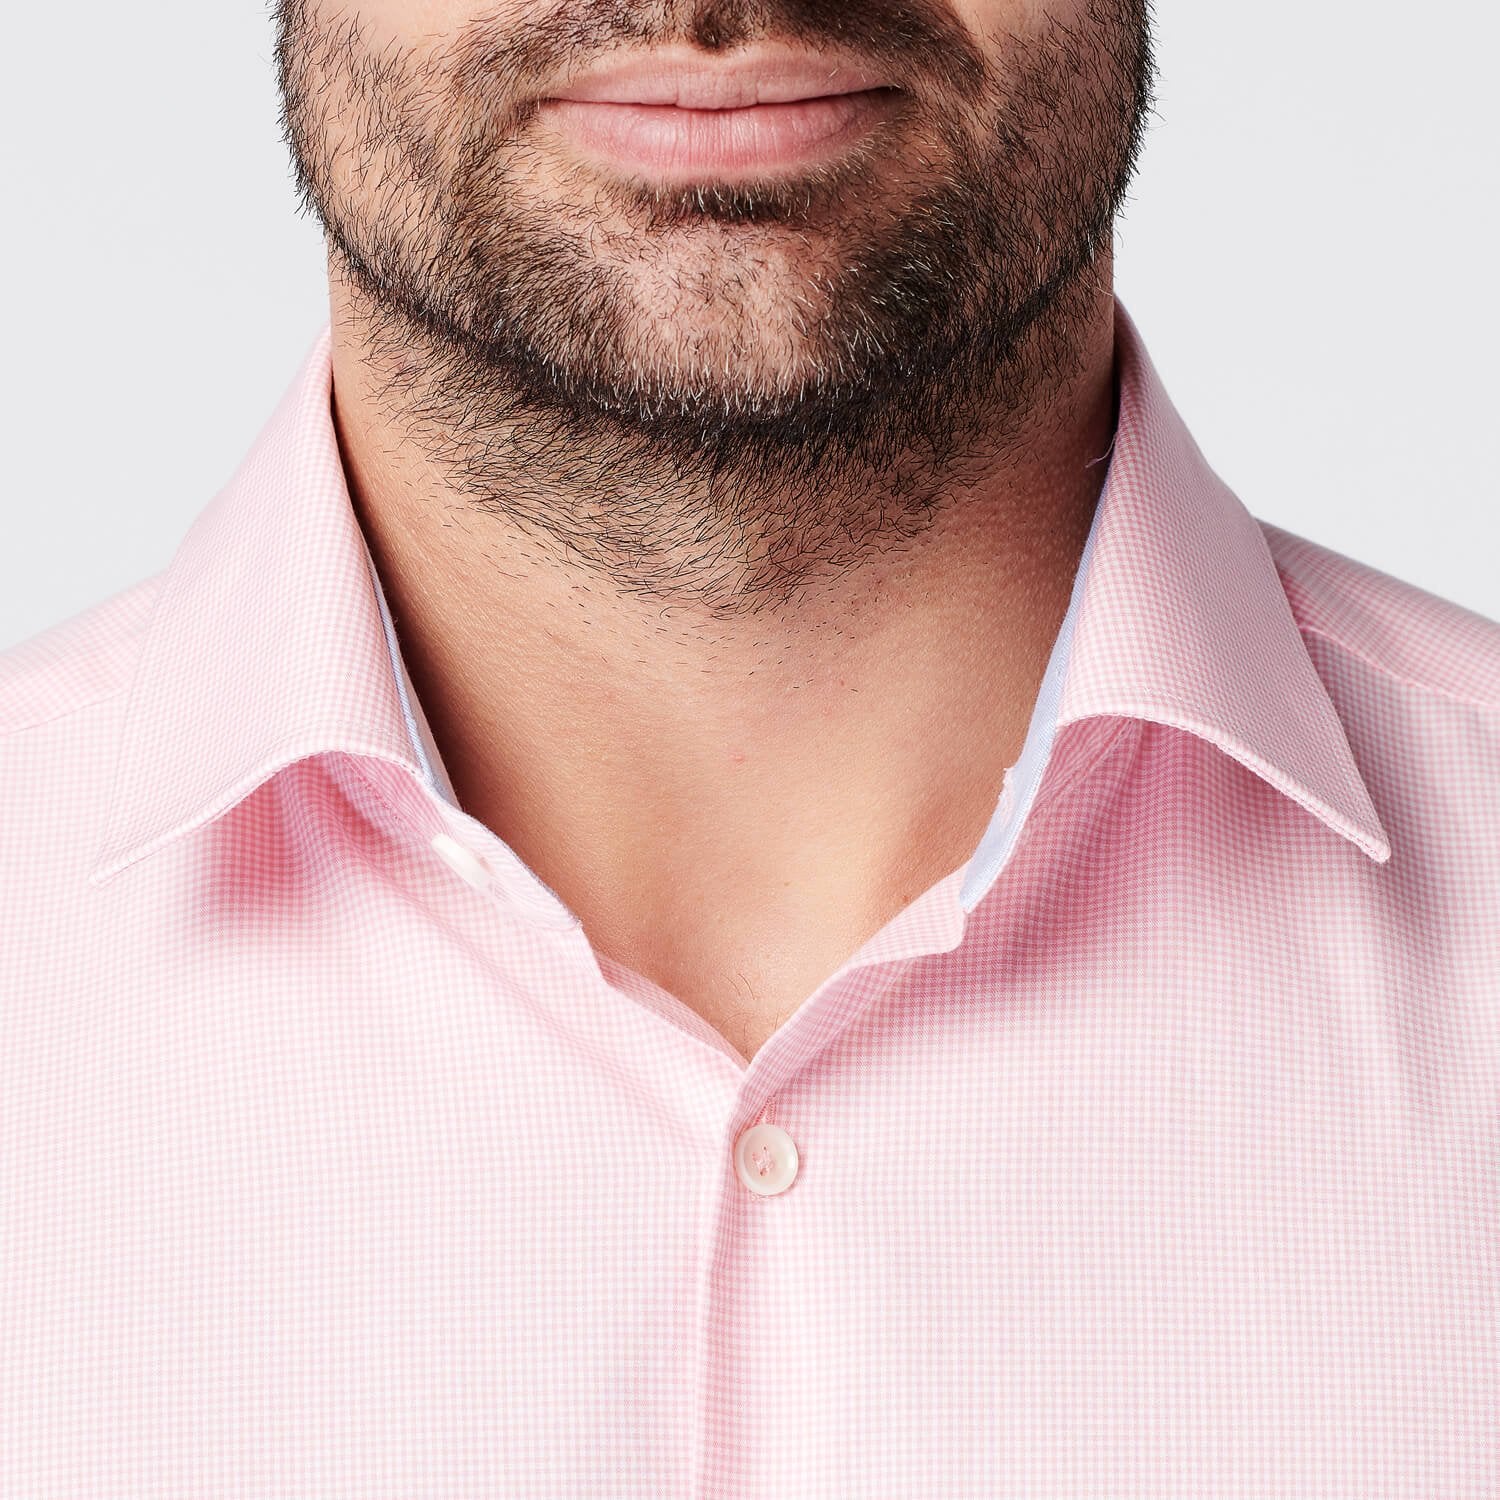 SKOT Fashion Duurzaam Overhemd Heren Checkered Pink - Pink - Maat M